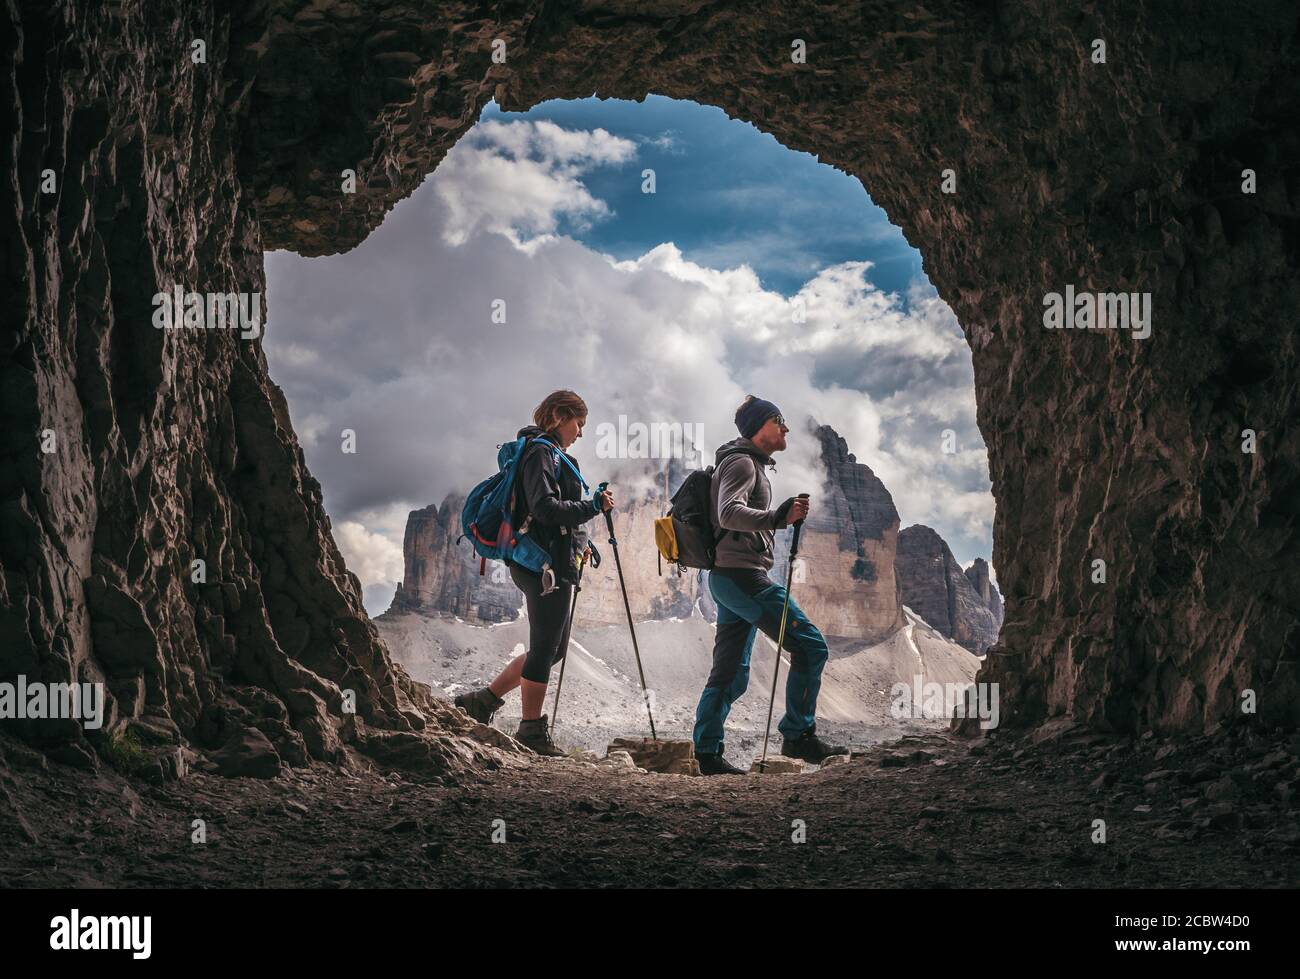 Un par de excursionistas caminando, con los picos de Tre Cime di Levarado en el fondo, vista desde una ventana de cueva, en Dolomitas, Italia. Foto de stock